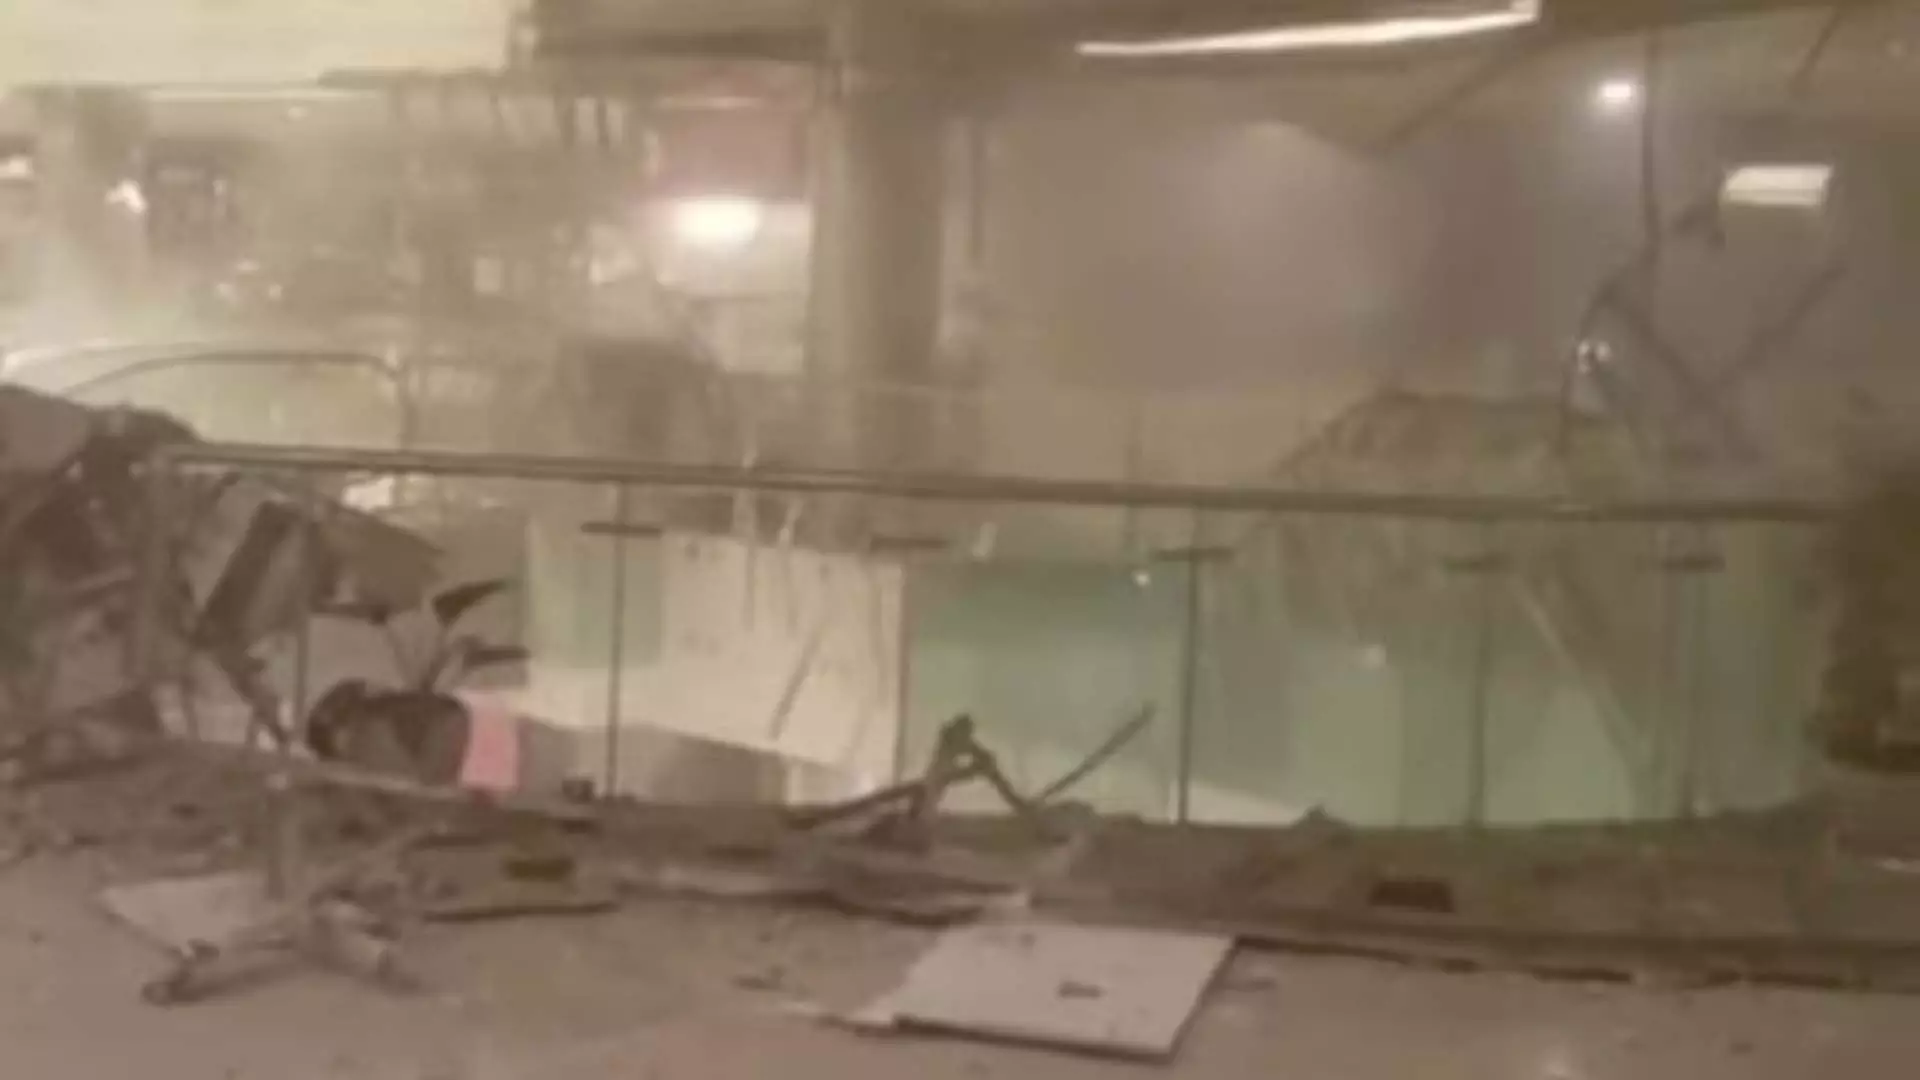 वीडियो में दिल्ली के एंबिएंस मॉल की क्षतिग्रस्त छत दिखाई गई